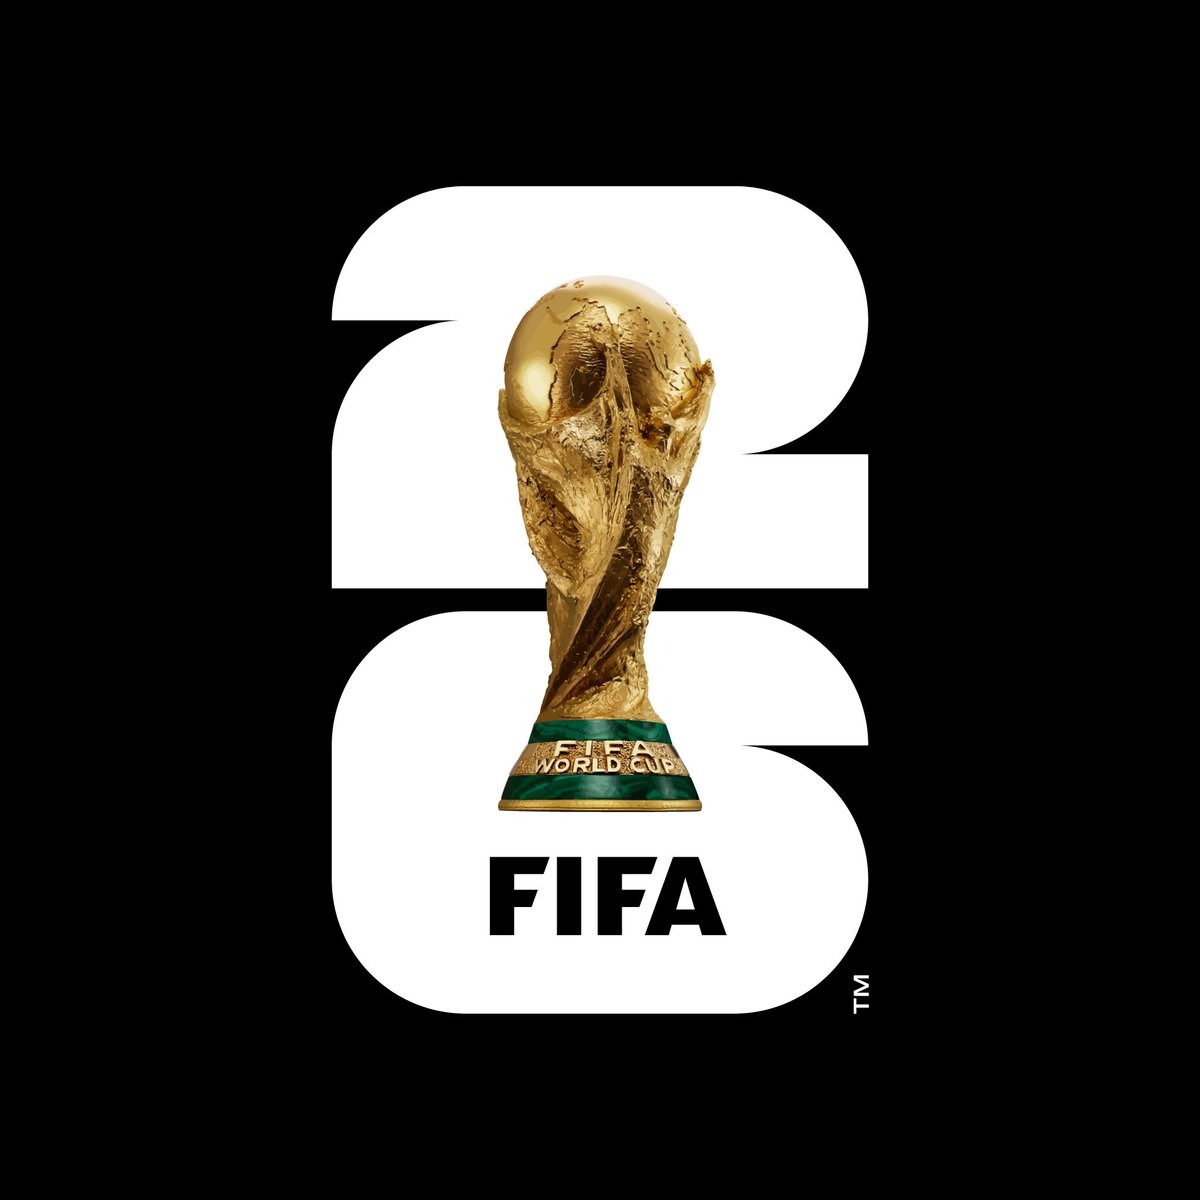 FIFA tiết lộ logo chính thức cho World Cup 2026